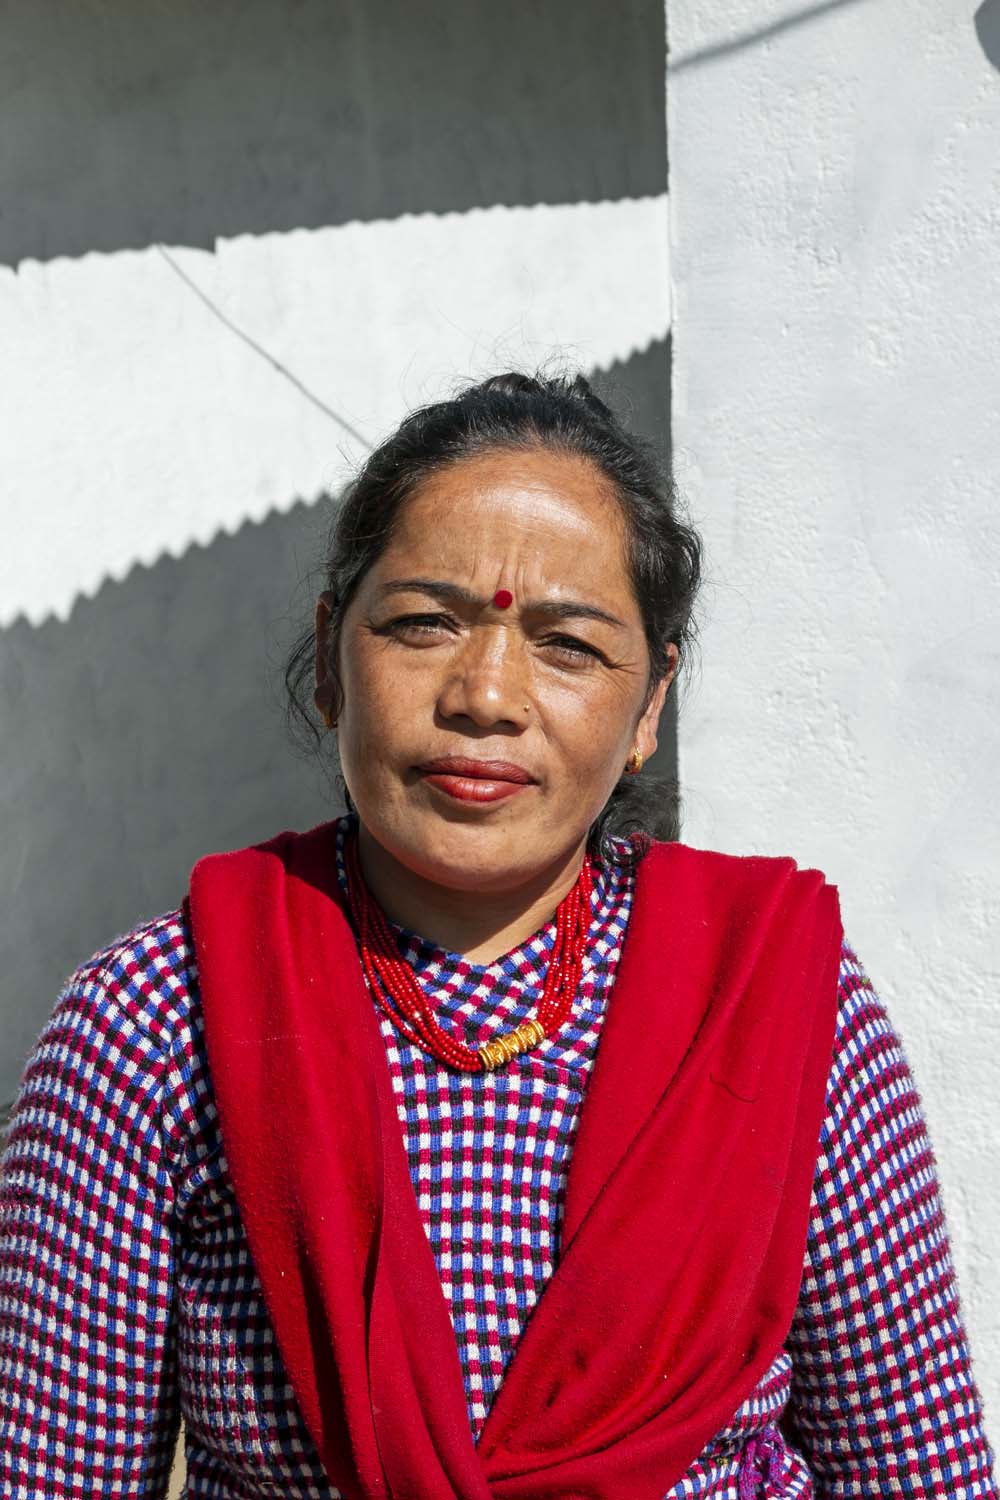 Cueilleuse de timur sauvage au Népal avec qui nous collaborons